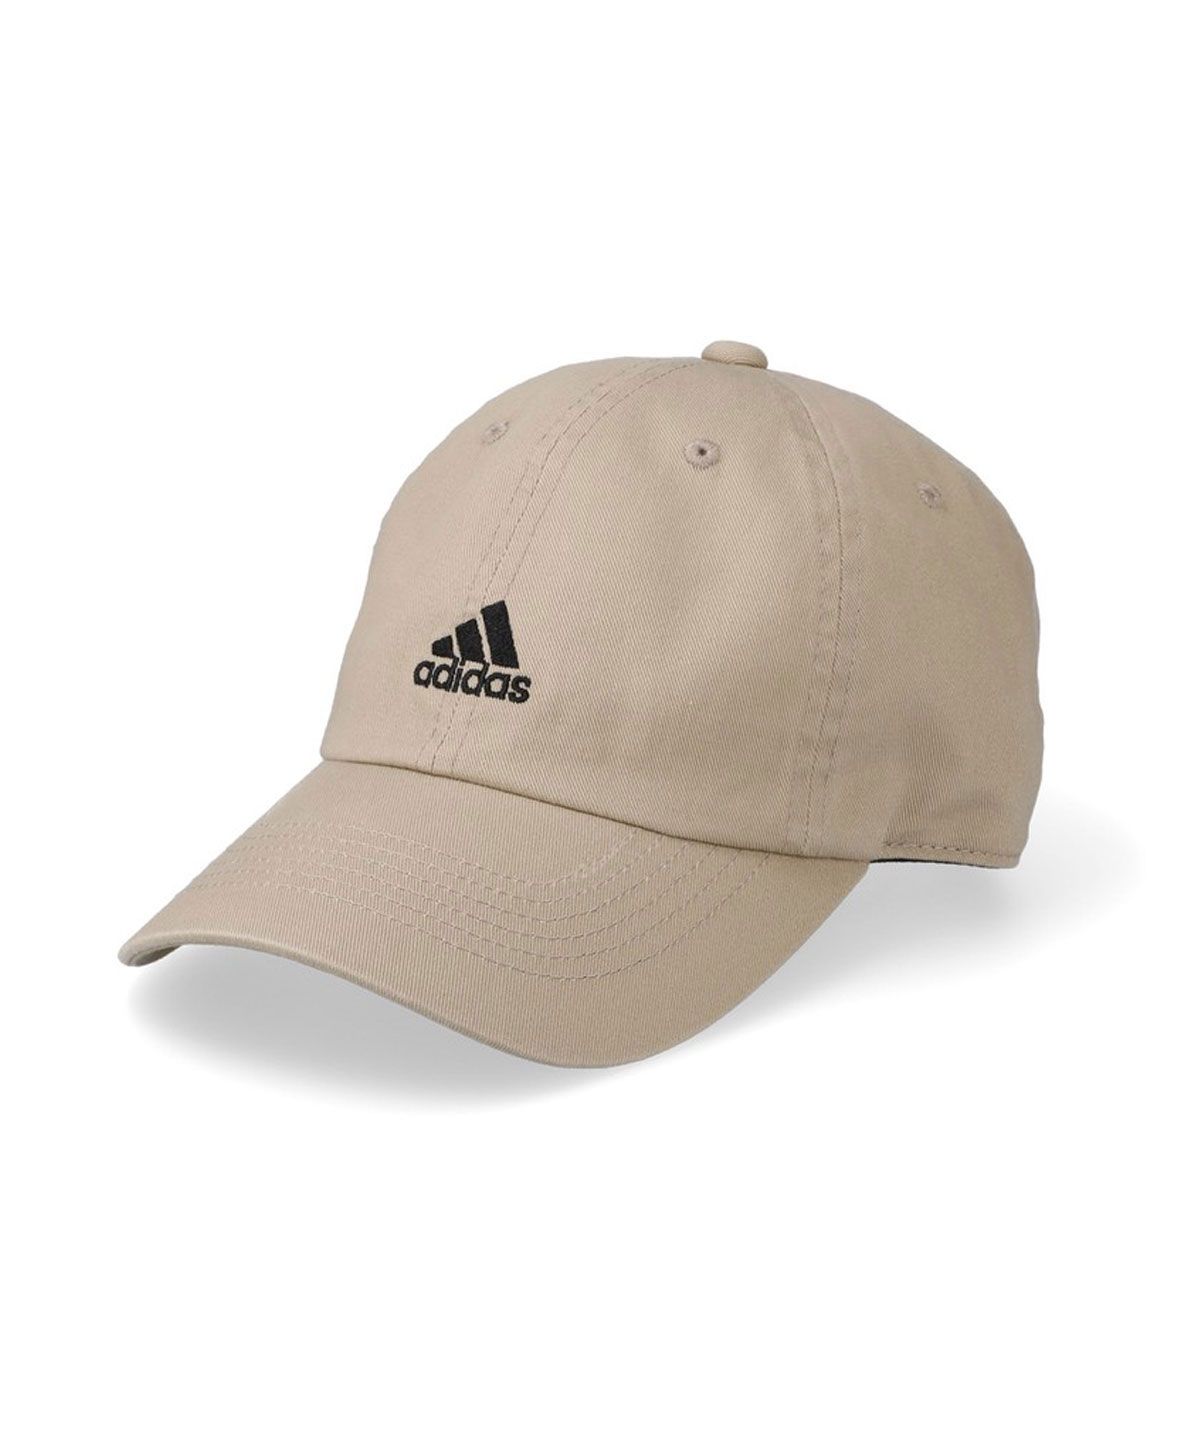 アディダス キャップ adidas ADS BOS ORGANIC COTTON CAP 帽子